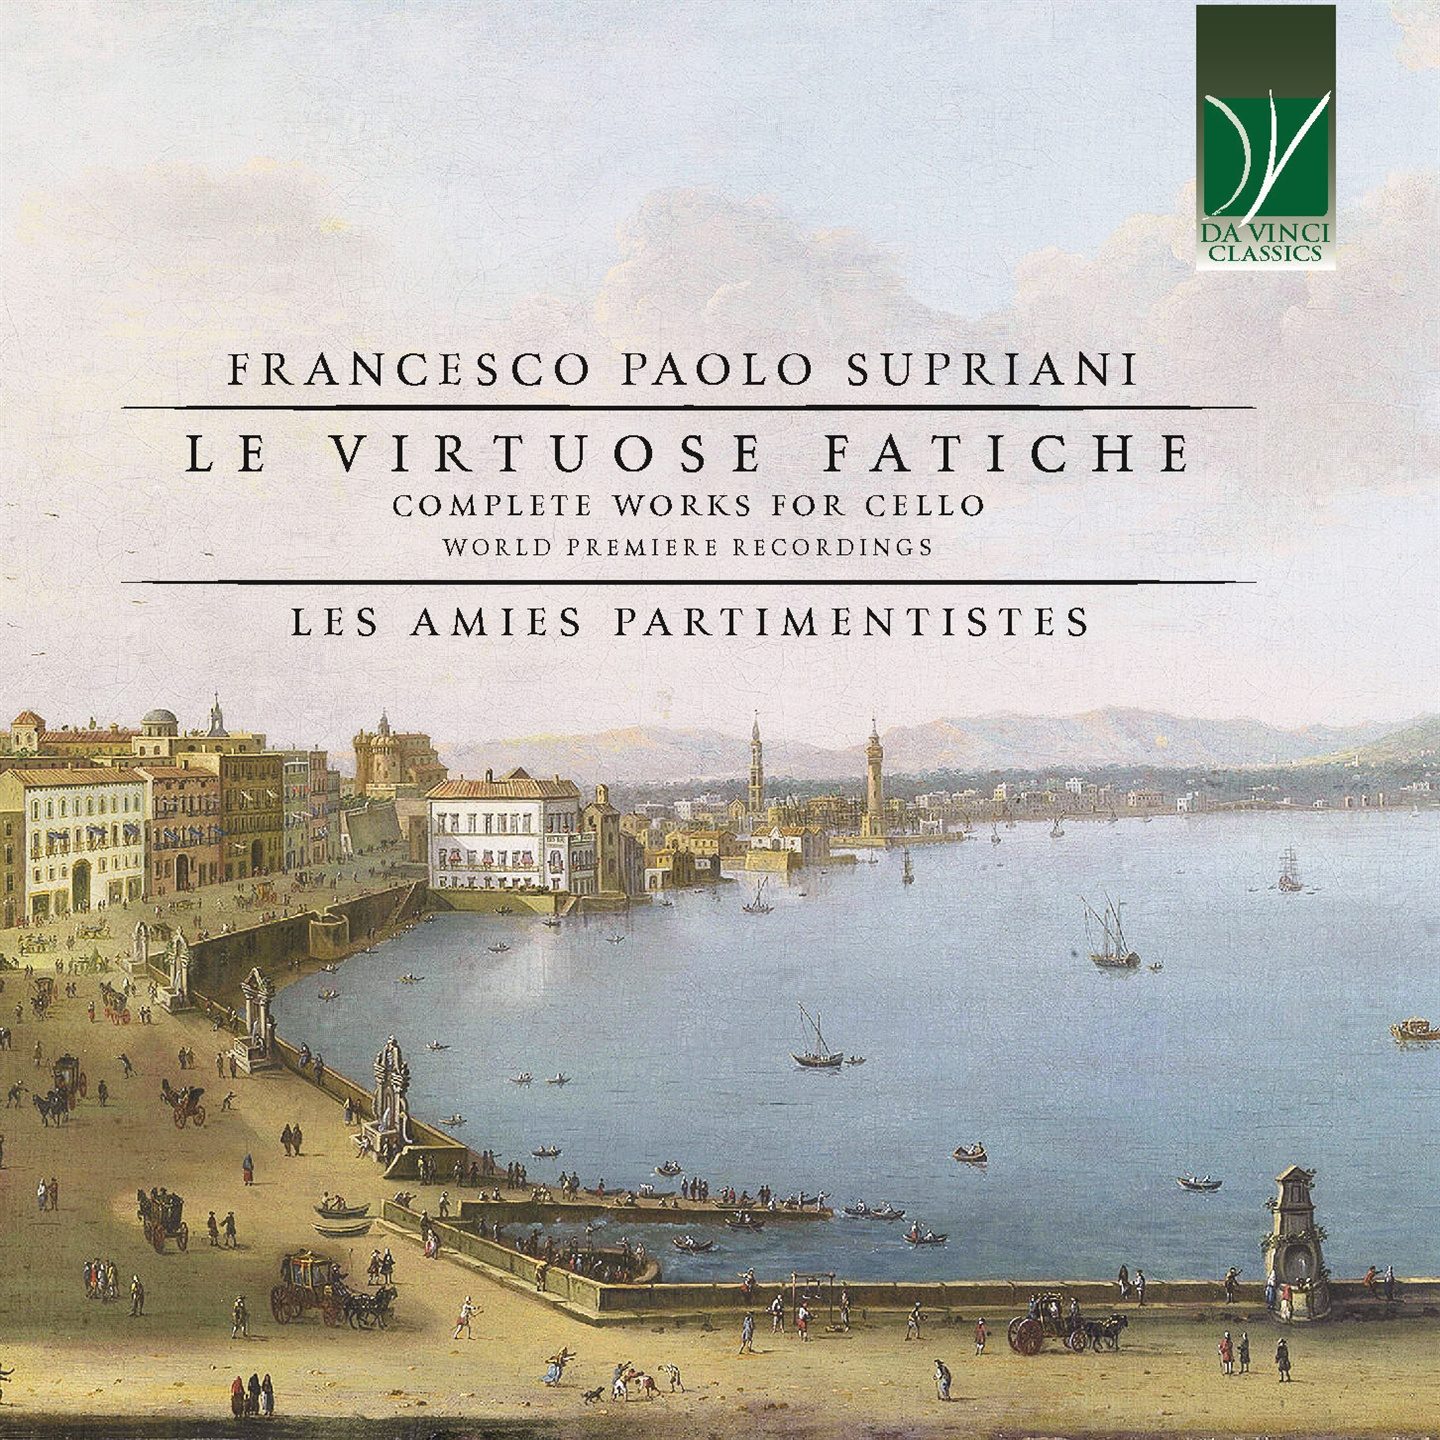 FRANCESCO PAOLO SUPRIANI: LE VIRTUOSE FATICHE, COMPLETE WORKS FOR CELLO